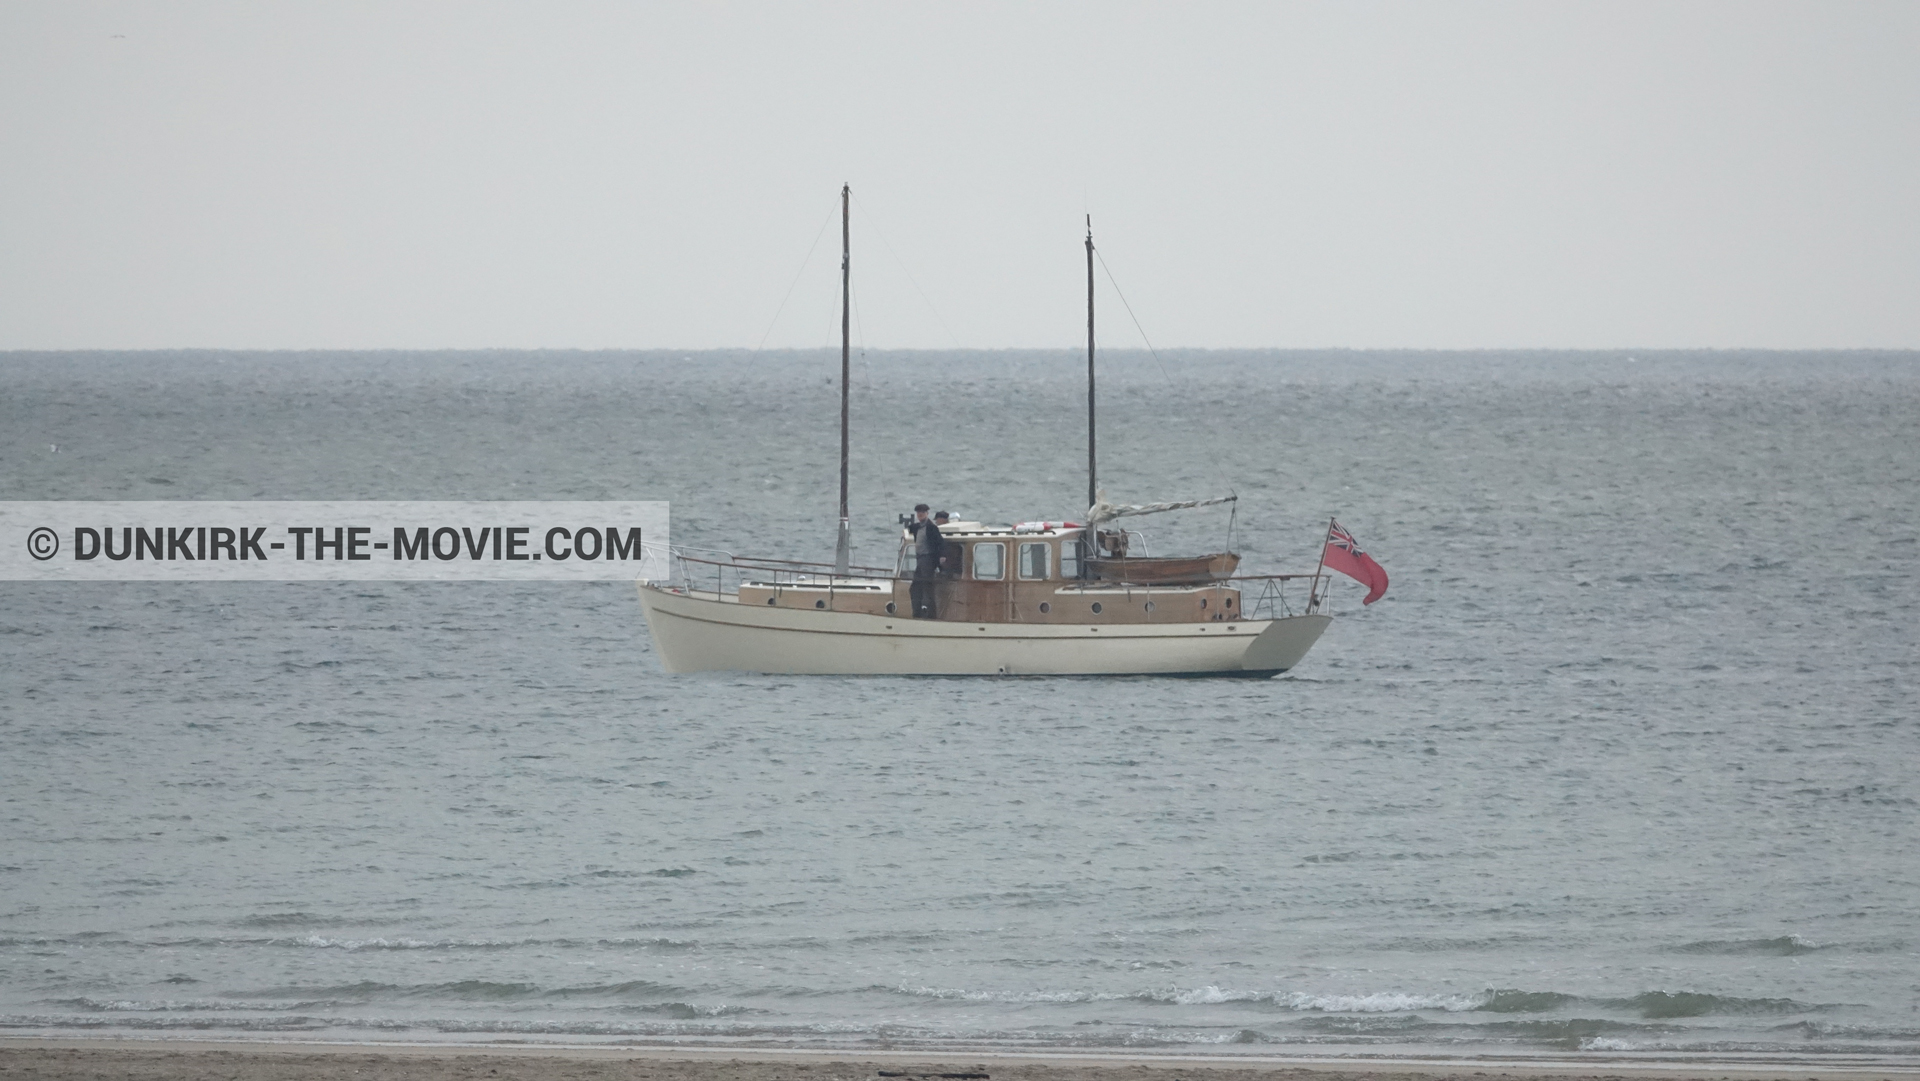 Fotos con playa, cielo gris, mares calma, extras, barco,  durante el rodaje de la película Dunkerque de Nolan